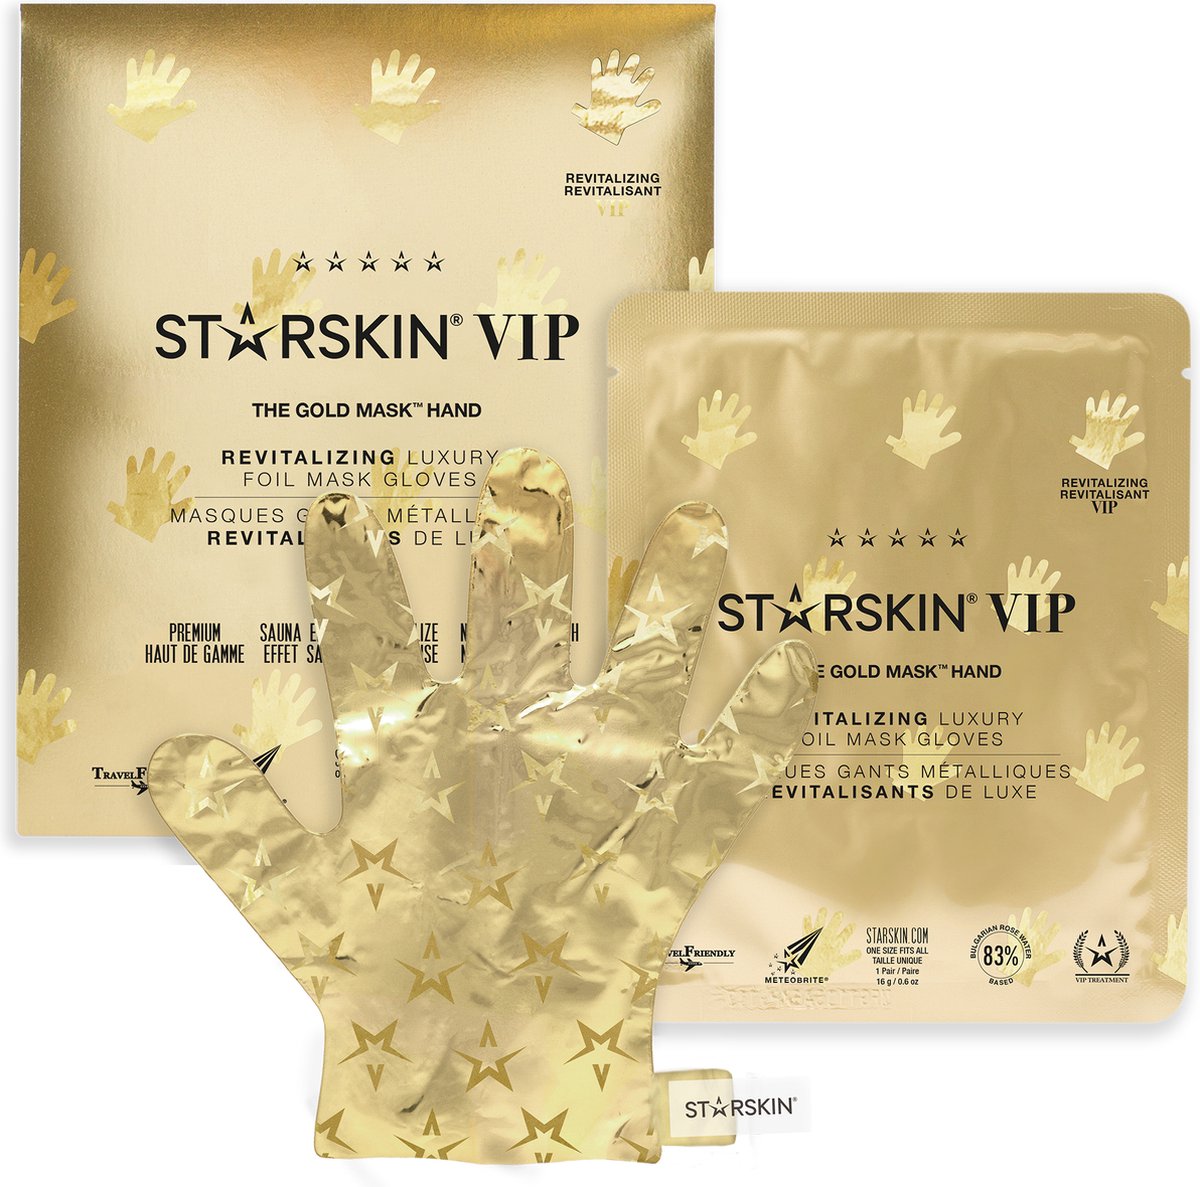 STARSKIN VIP The Gold Mask Hand - Handcreme – Handverzorging - Droge handen